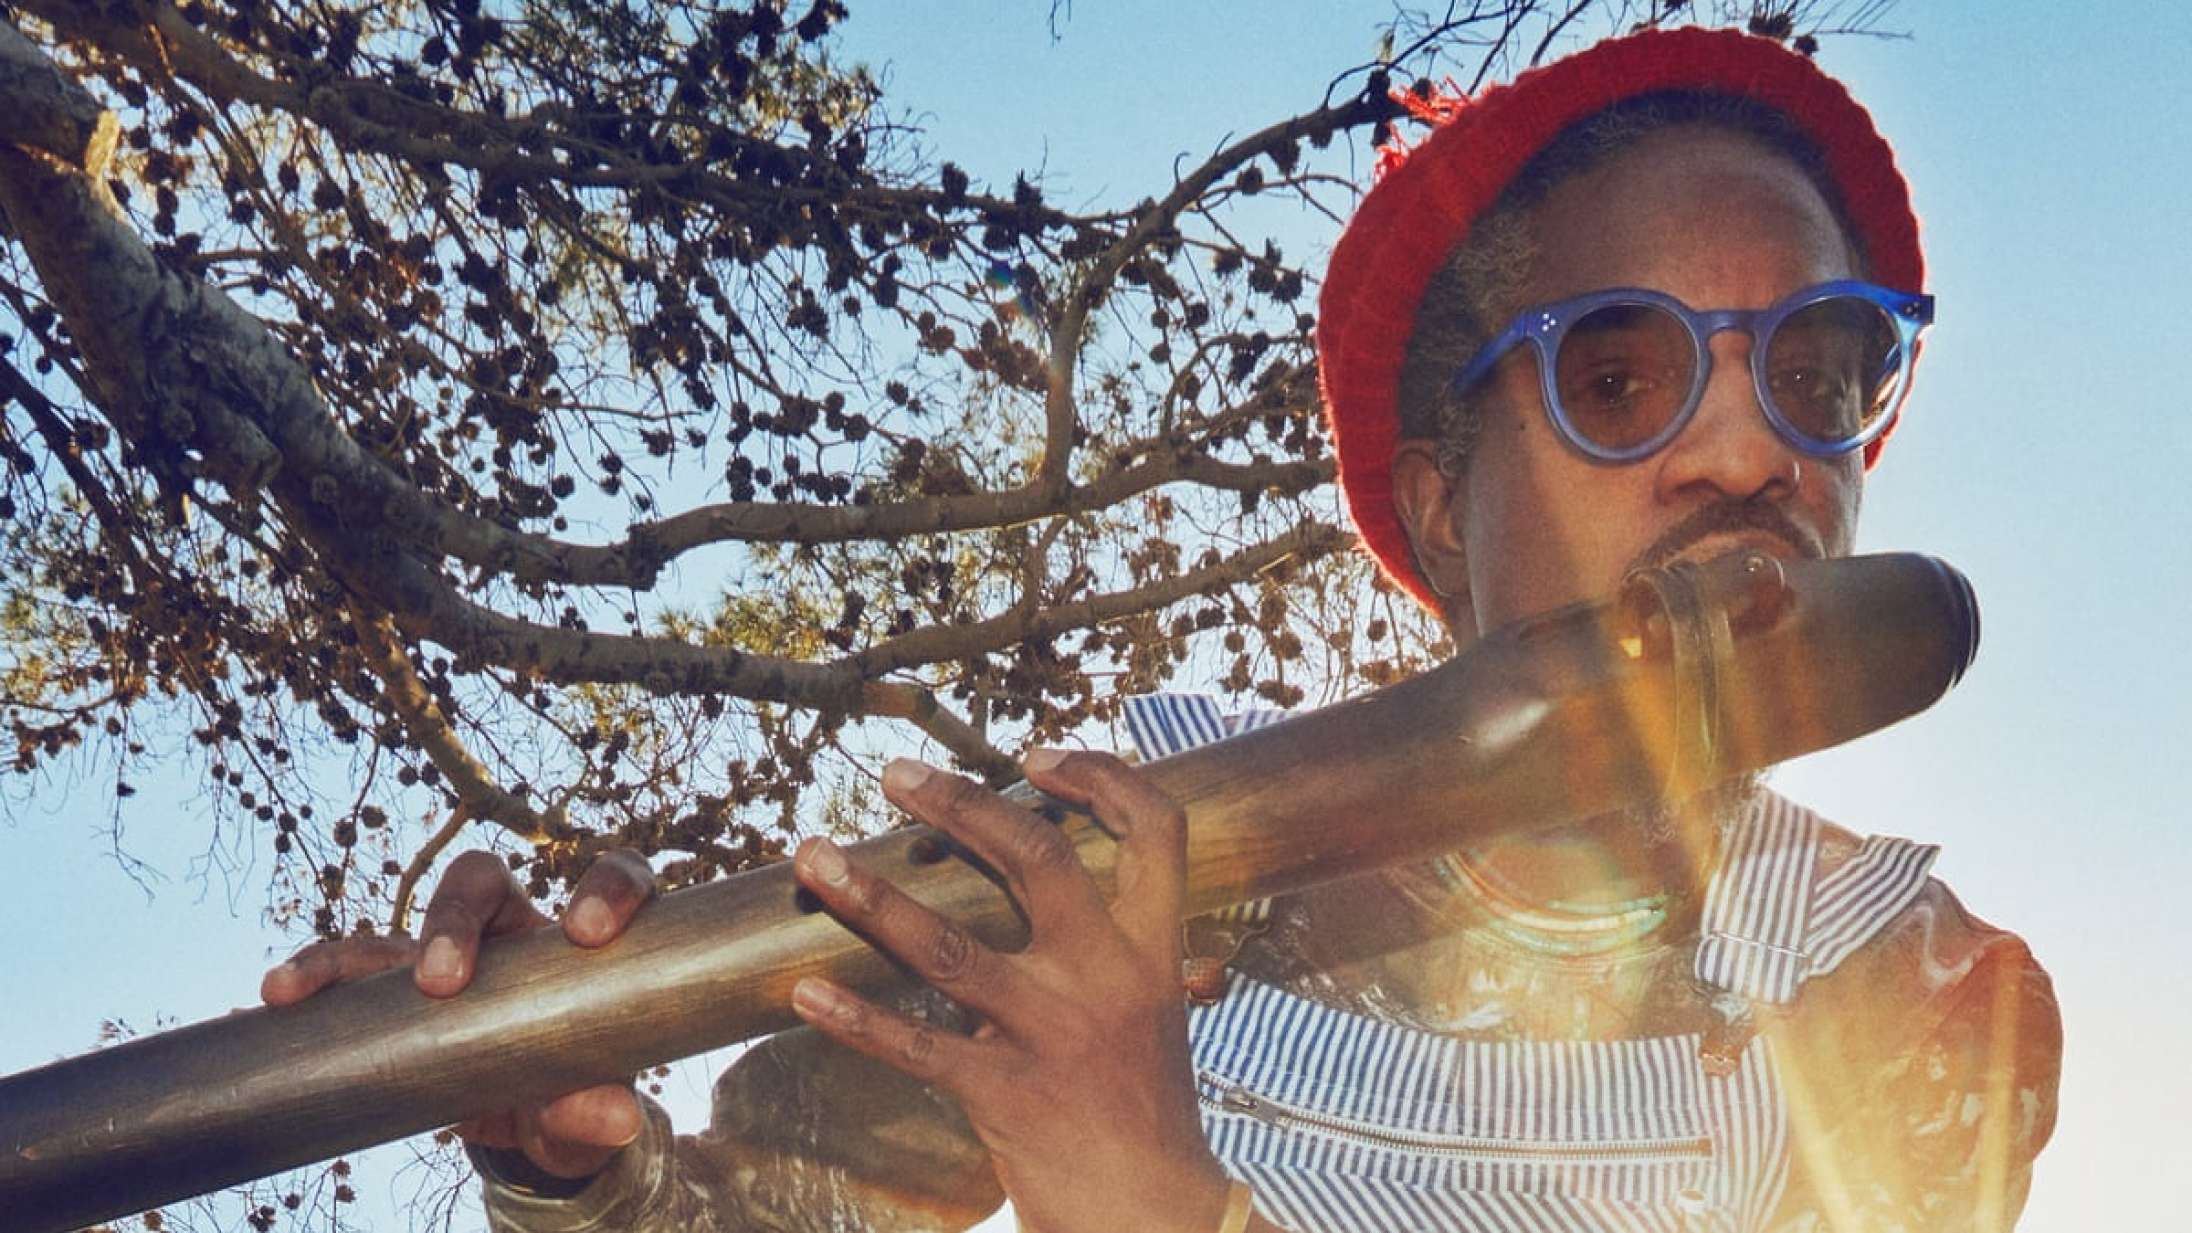 ‘New Blue Sun’: André 3000’s 87 minutter lange fløjtealbum er meget mere end en joke